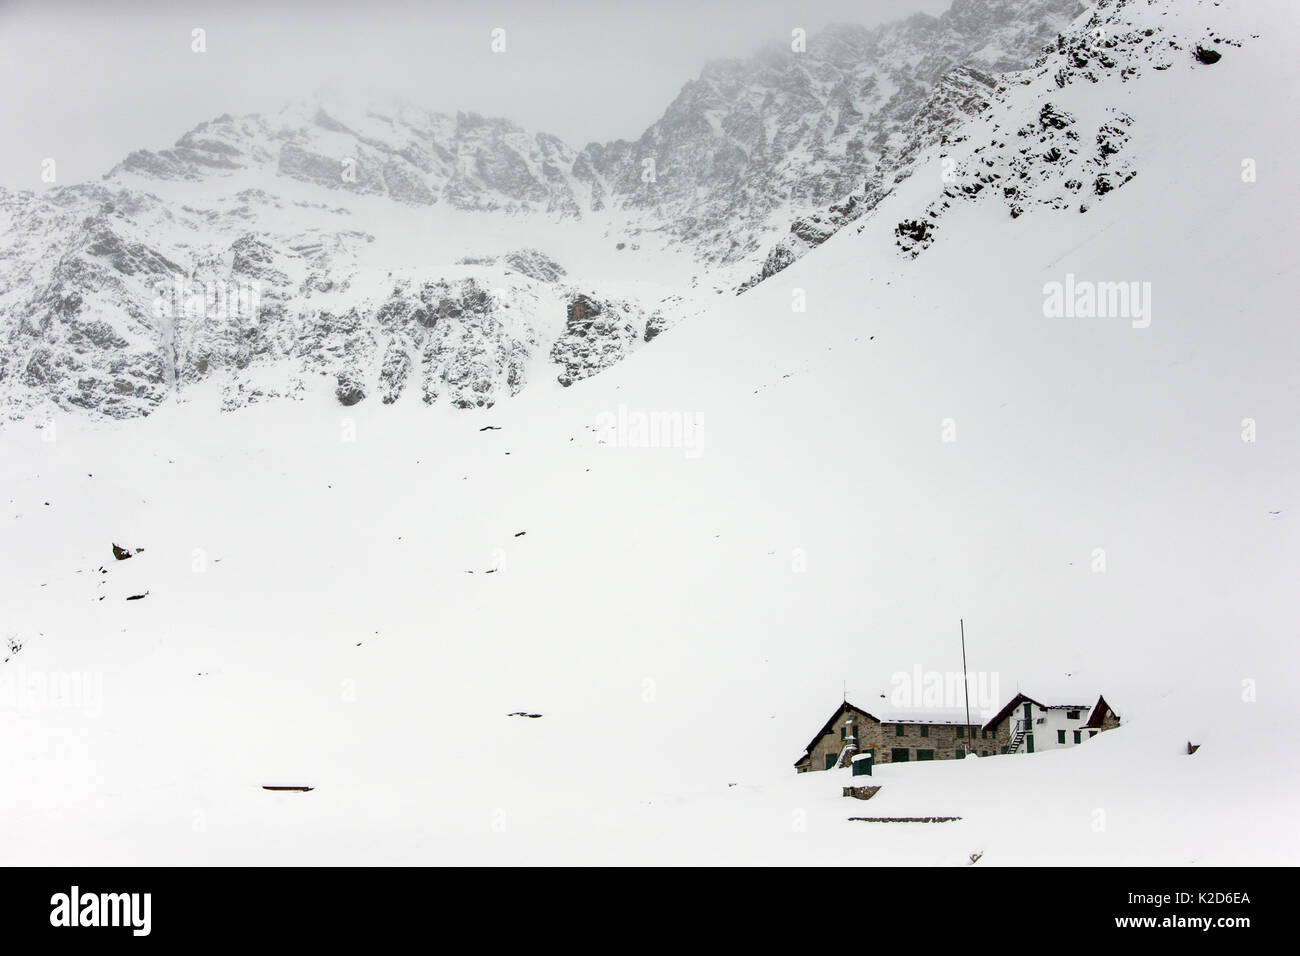 Vittorio Sella refuge en montagne enneigée en hiver, Parc National du Grand Paradis, en Italie, en novembre. Banque D'Images